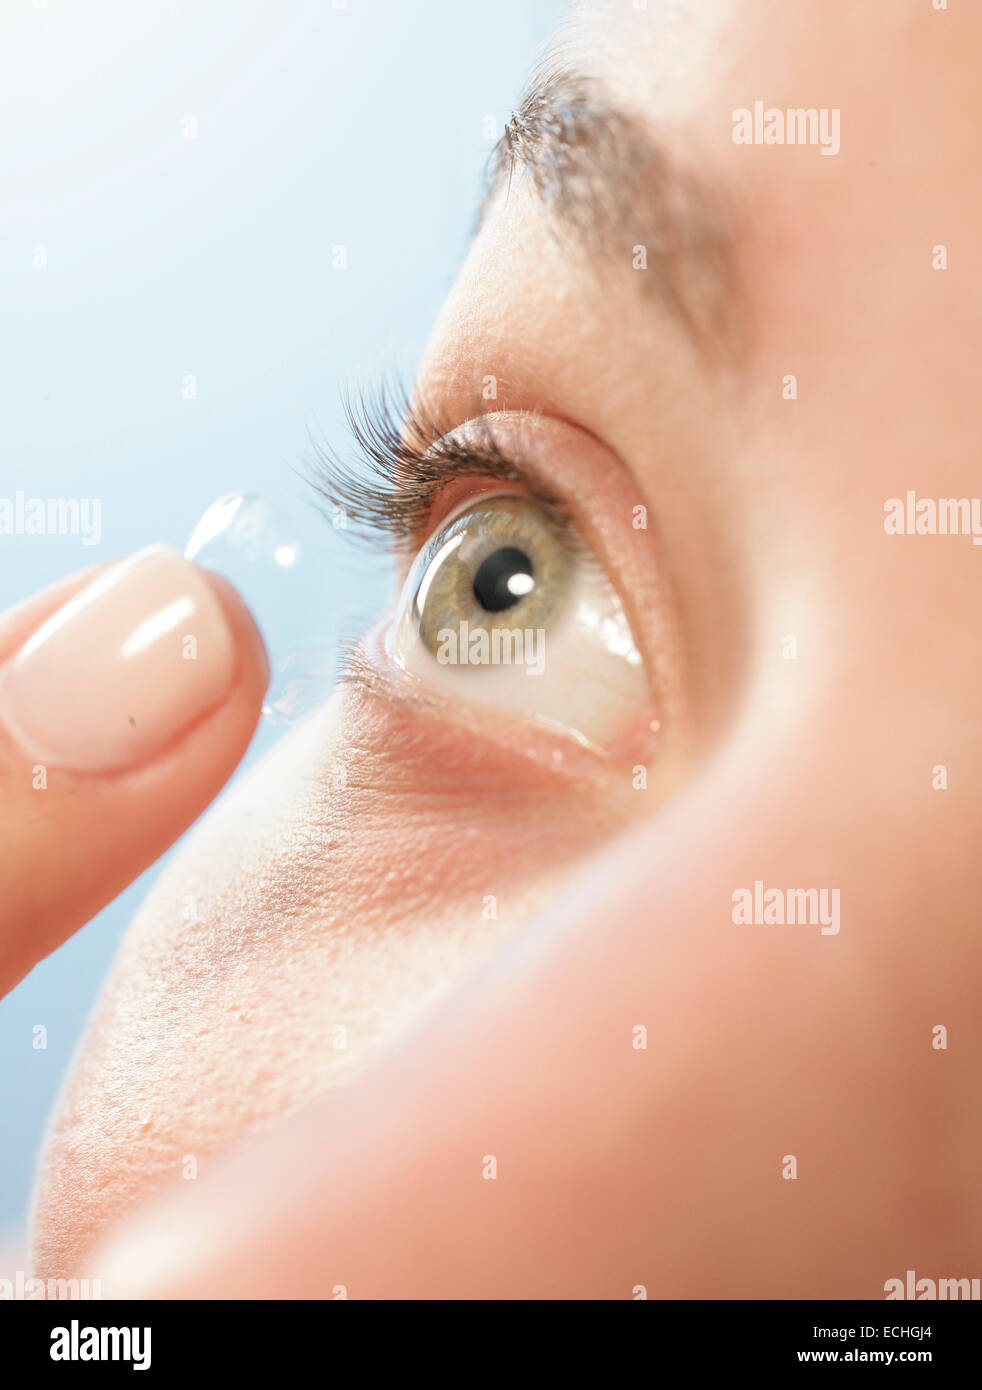 Un gros plan à un angle d'une femme mettant en une lentille de contact dans l'œil Banque D'Images